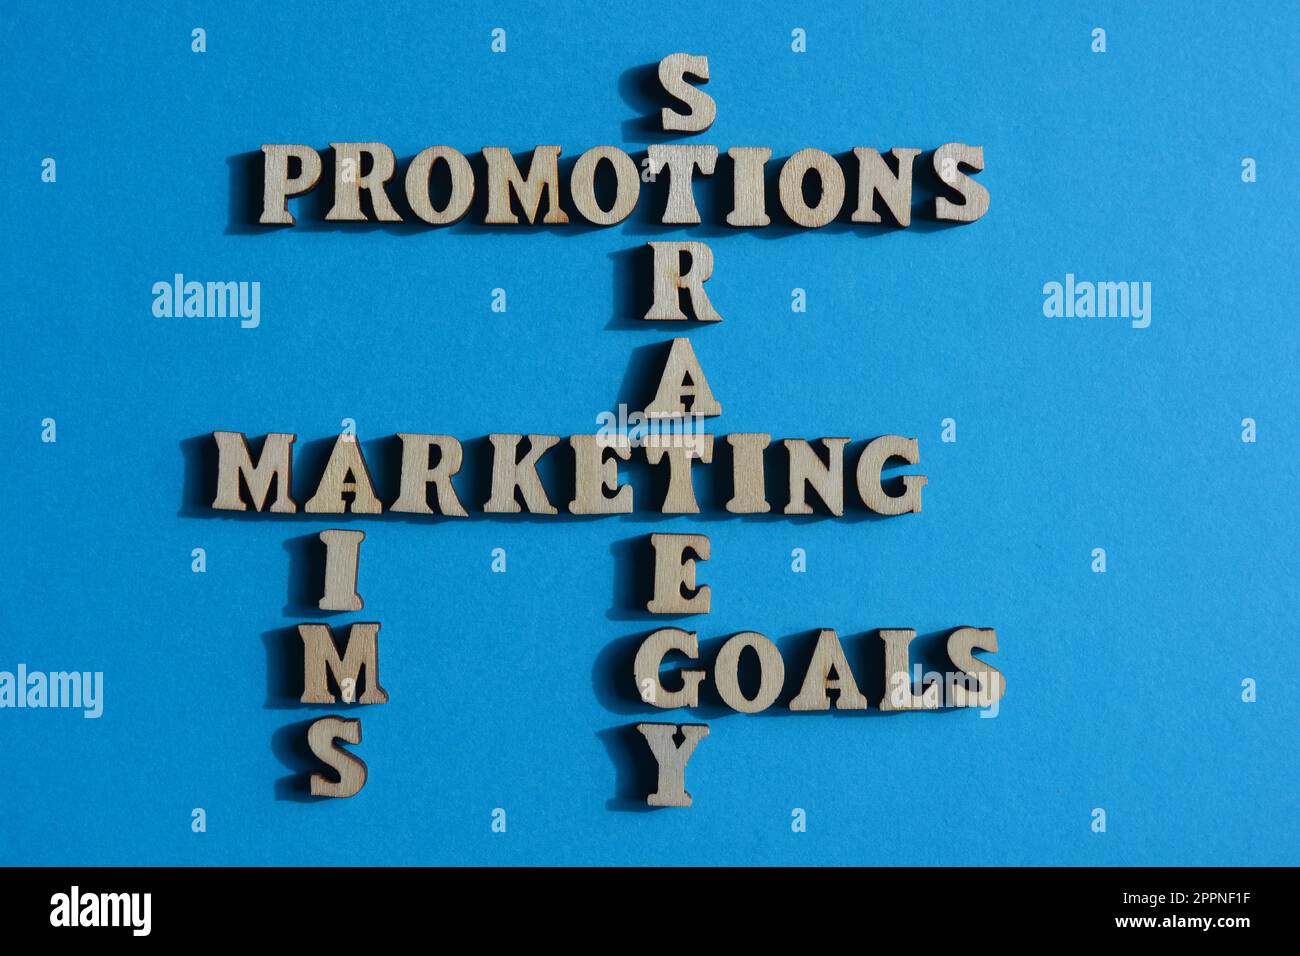 Marketing, Promotions, Strategie, Ziele, Ziele, Wörter in hölzernen Buchstaben sind Kreuzworträtsel, isoliert auf blauem Hintergrund Stockfoto